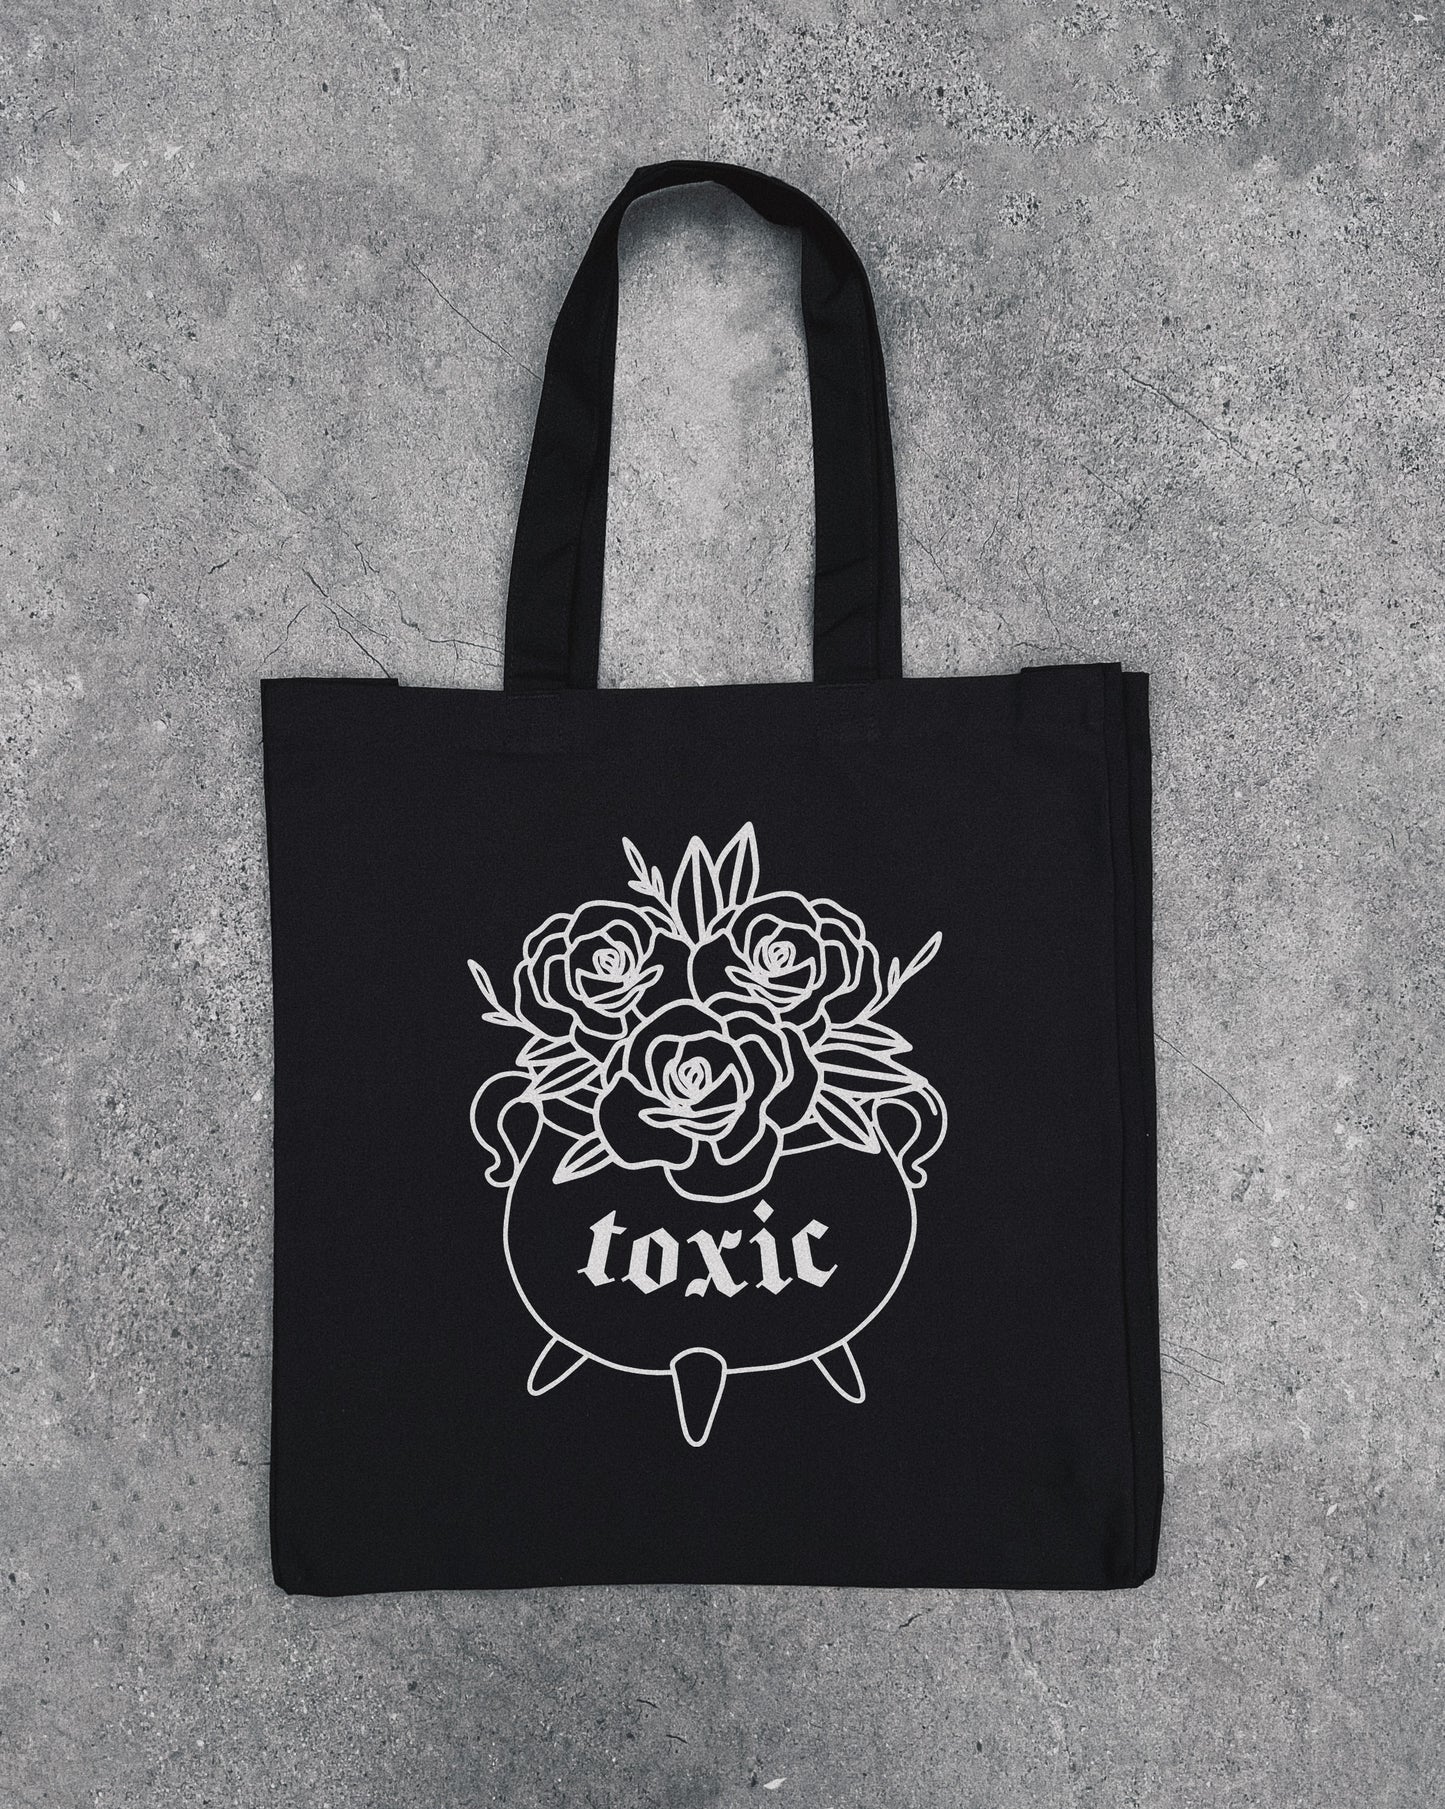 Toxic - Tote Bag